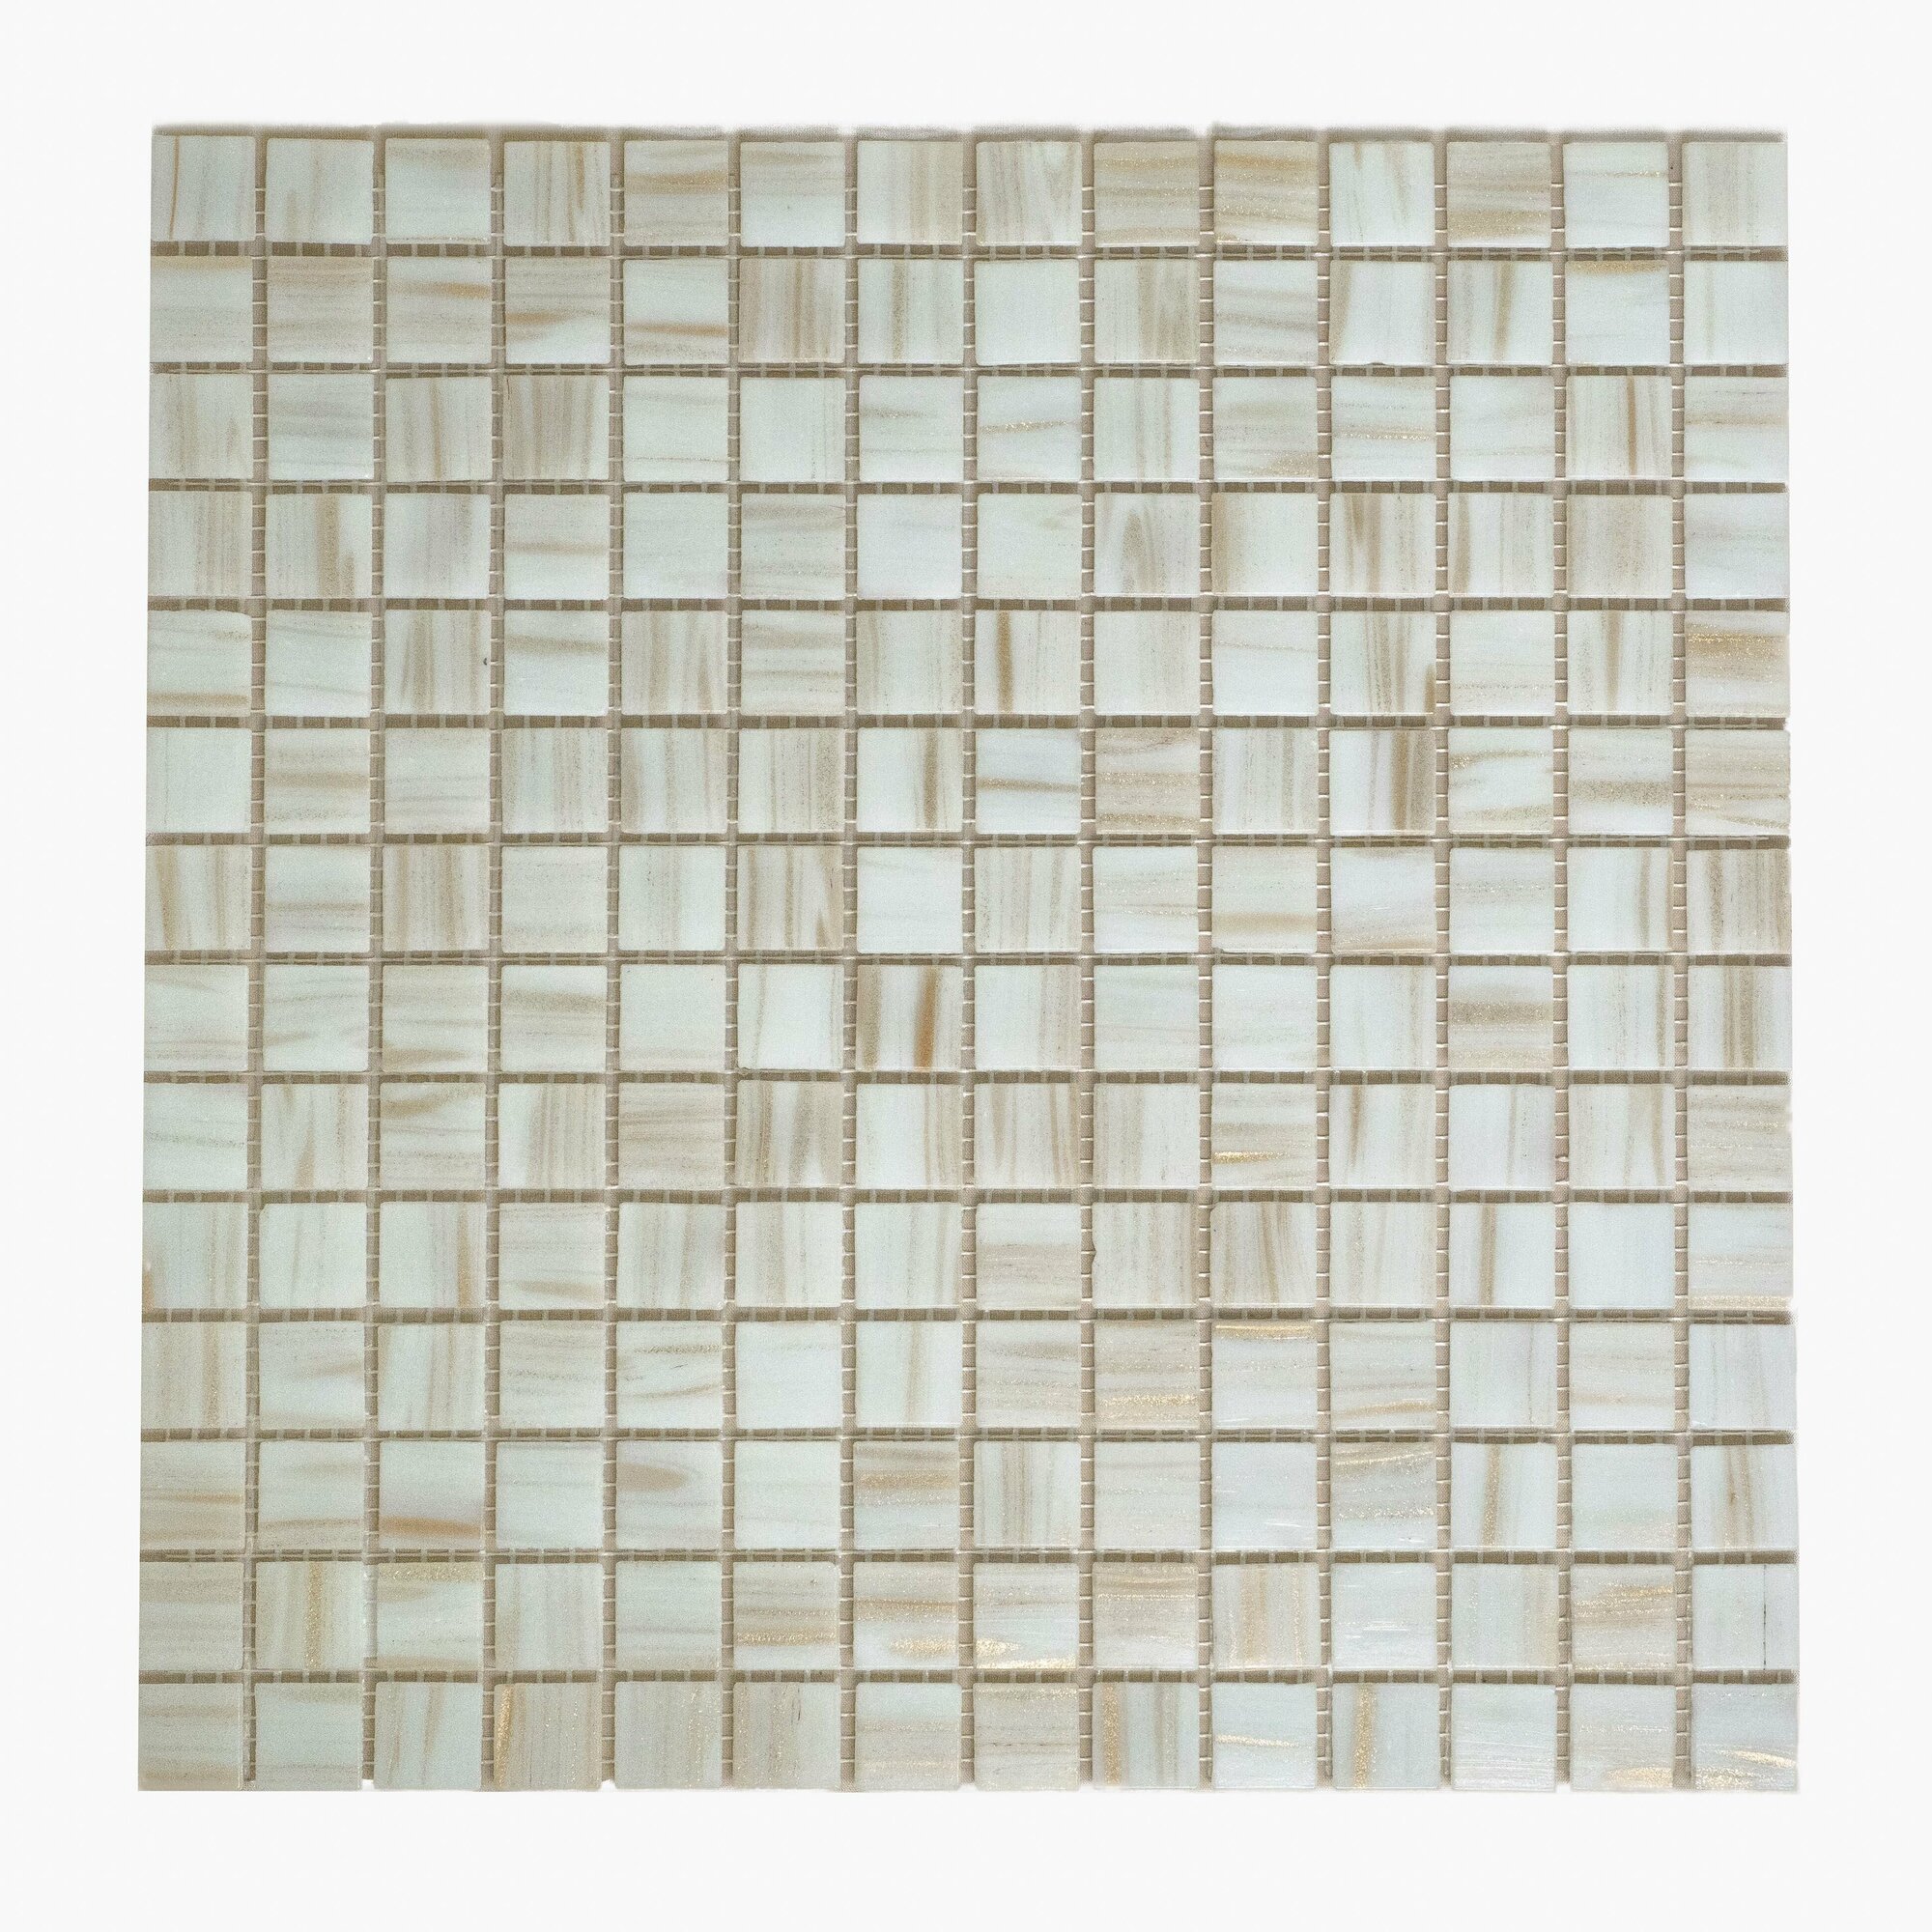 Плитка мозаика MIRO (серия Aurum №17), стеклянная плитка мозаика для ванной комнаты, для душевой, для фартука на кухне, 20 шт.